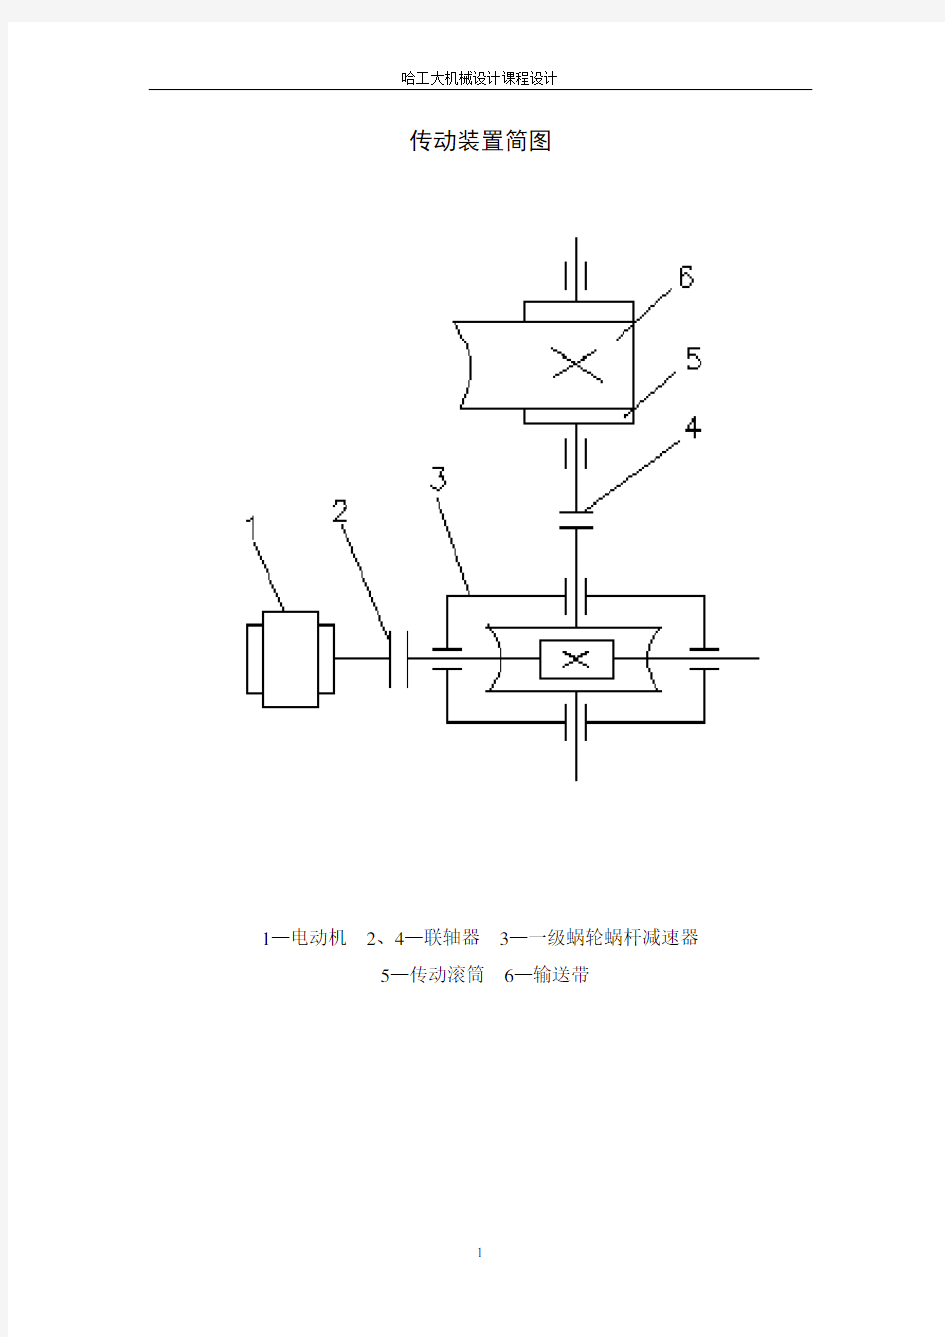 哈工大机械设计课程设计蜗杆减速器设计说明书(含图)